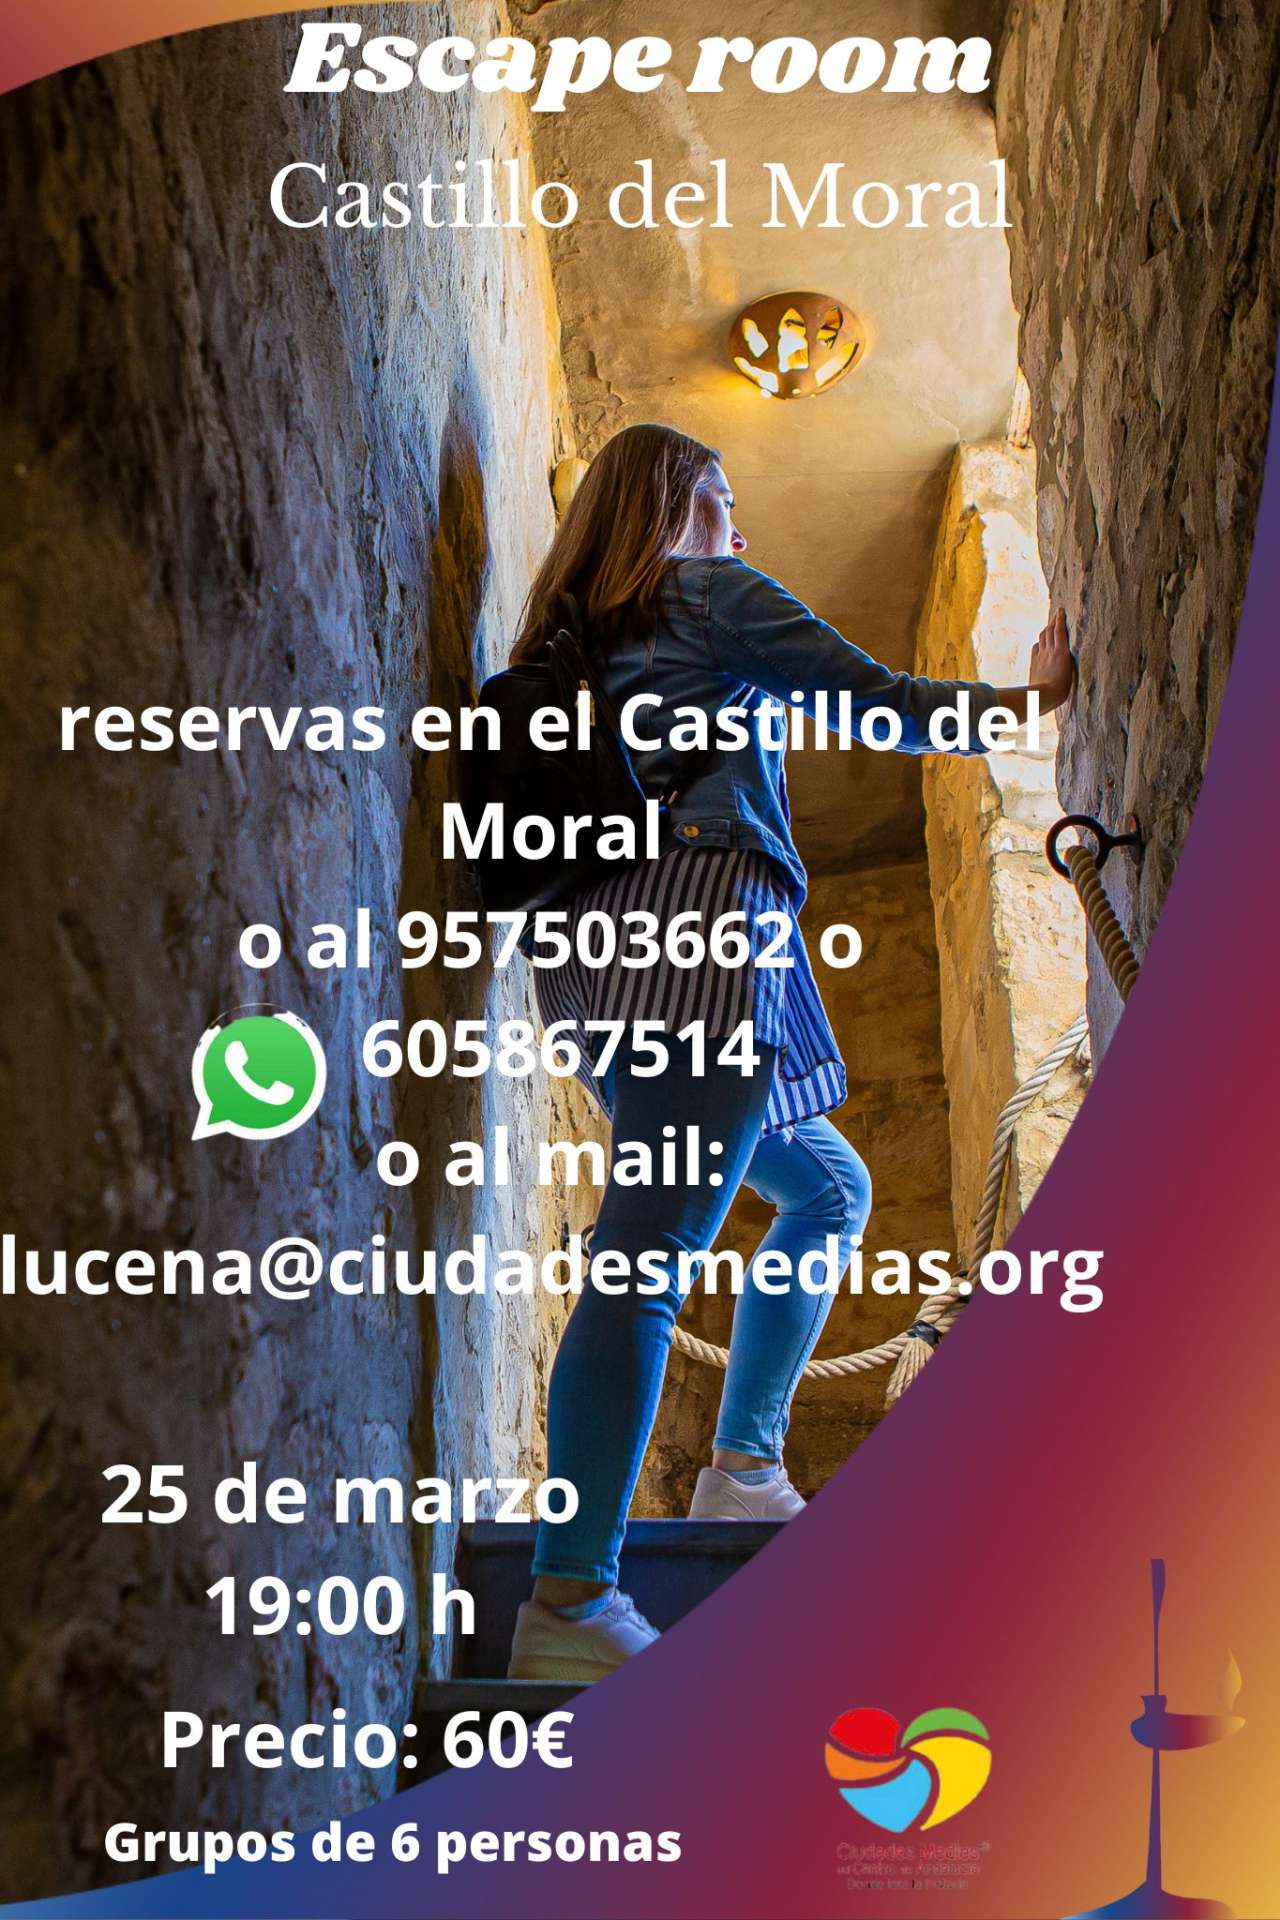 Escape room "Castillo del Moral"